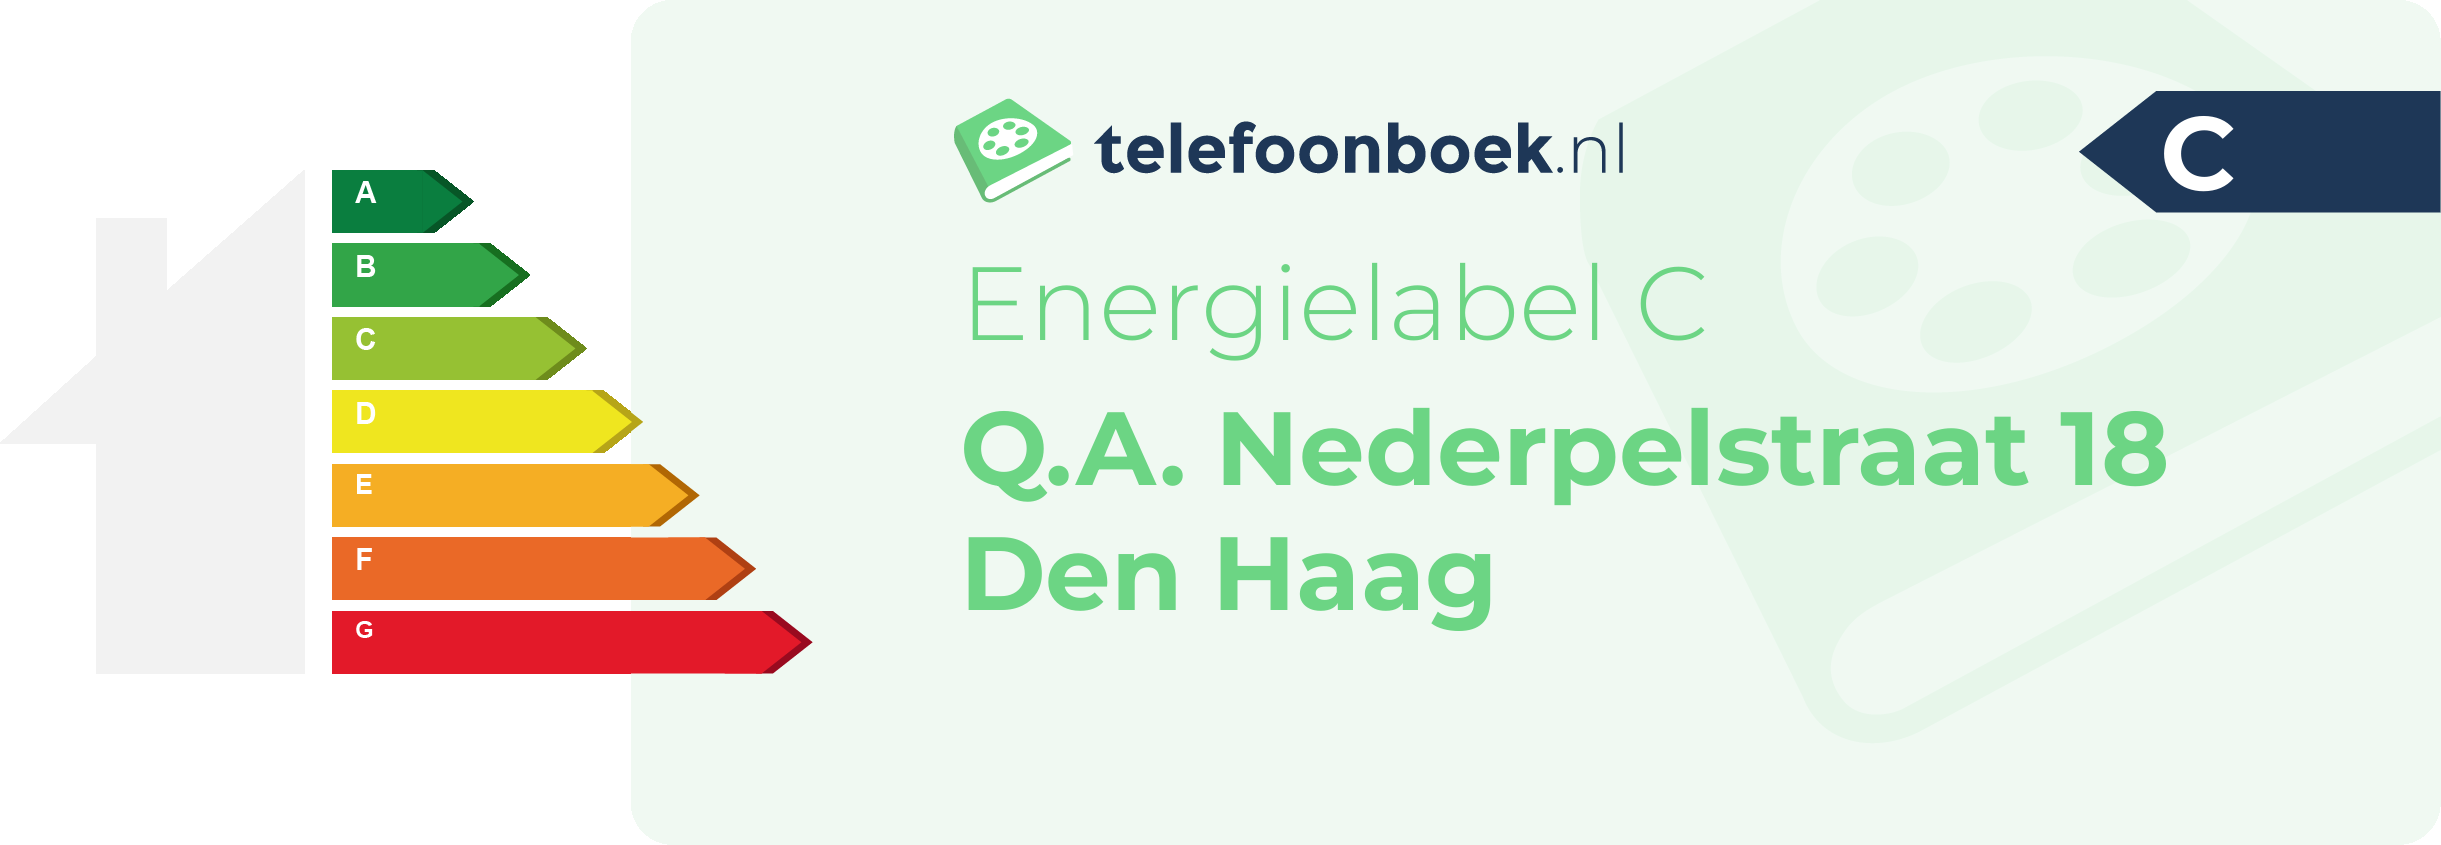 Energielabel Q.A. Nederpelstraat 18 Den Haag